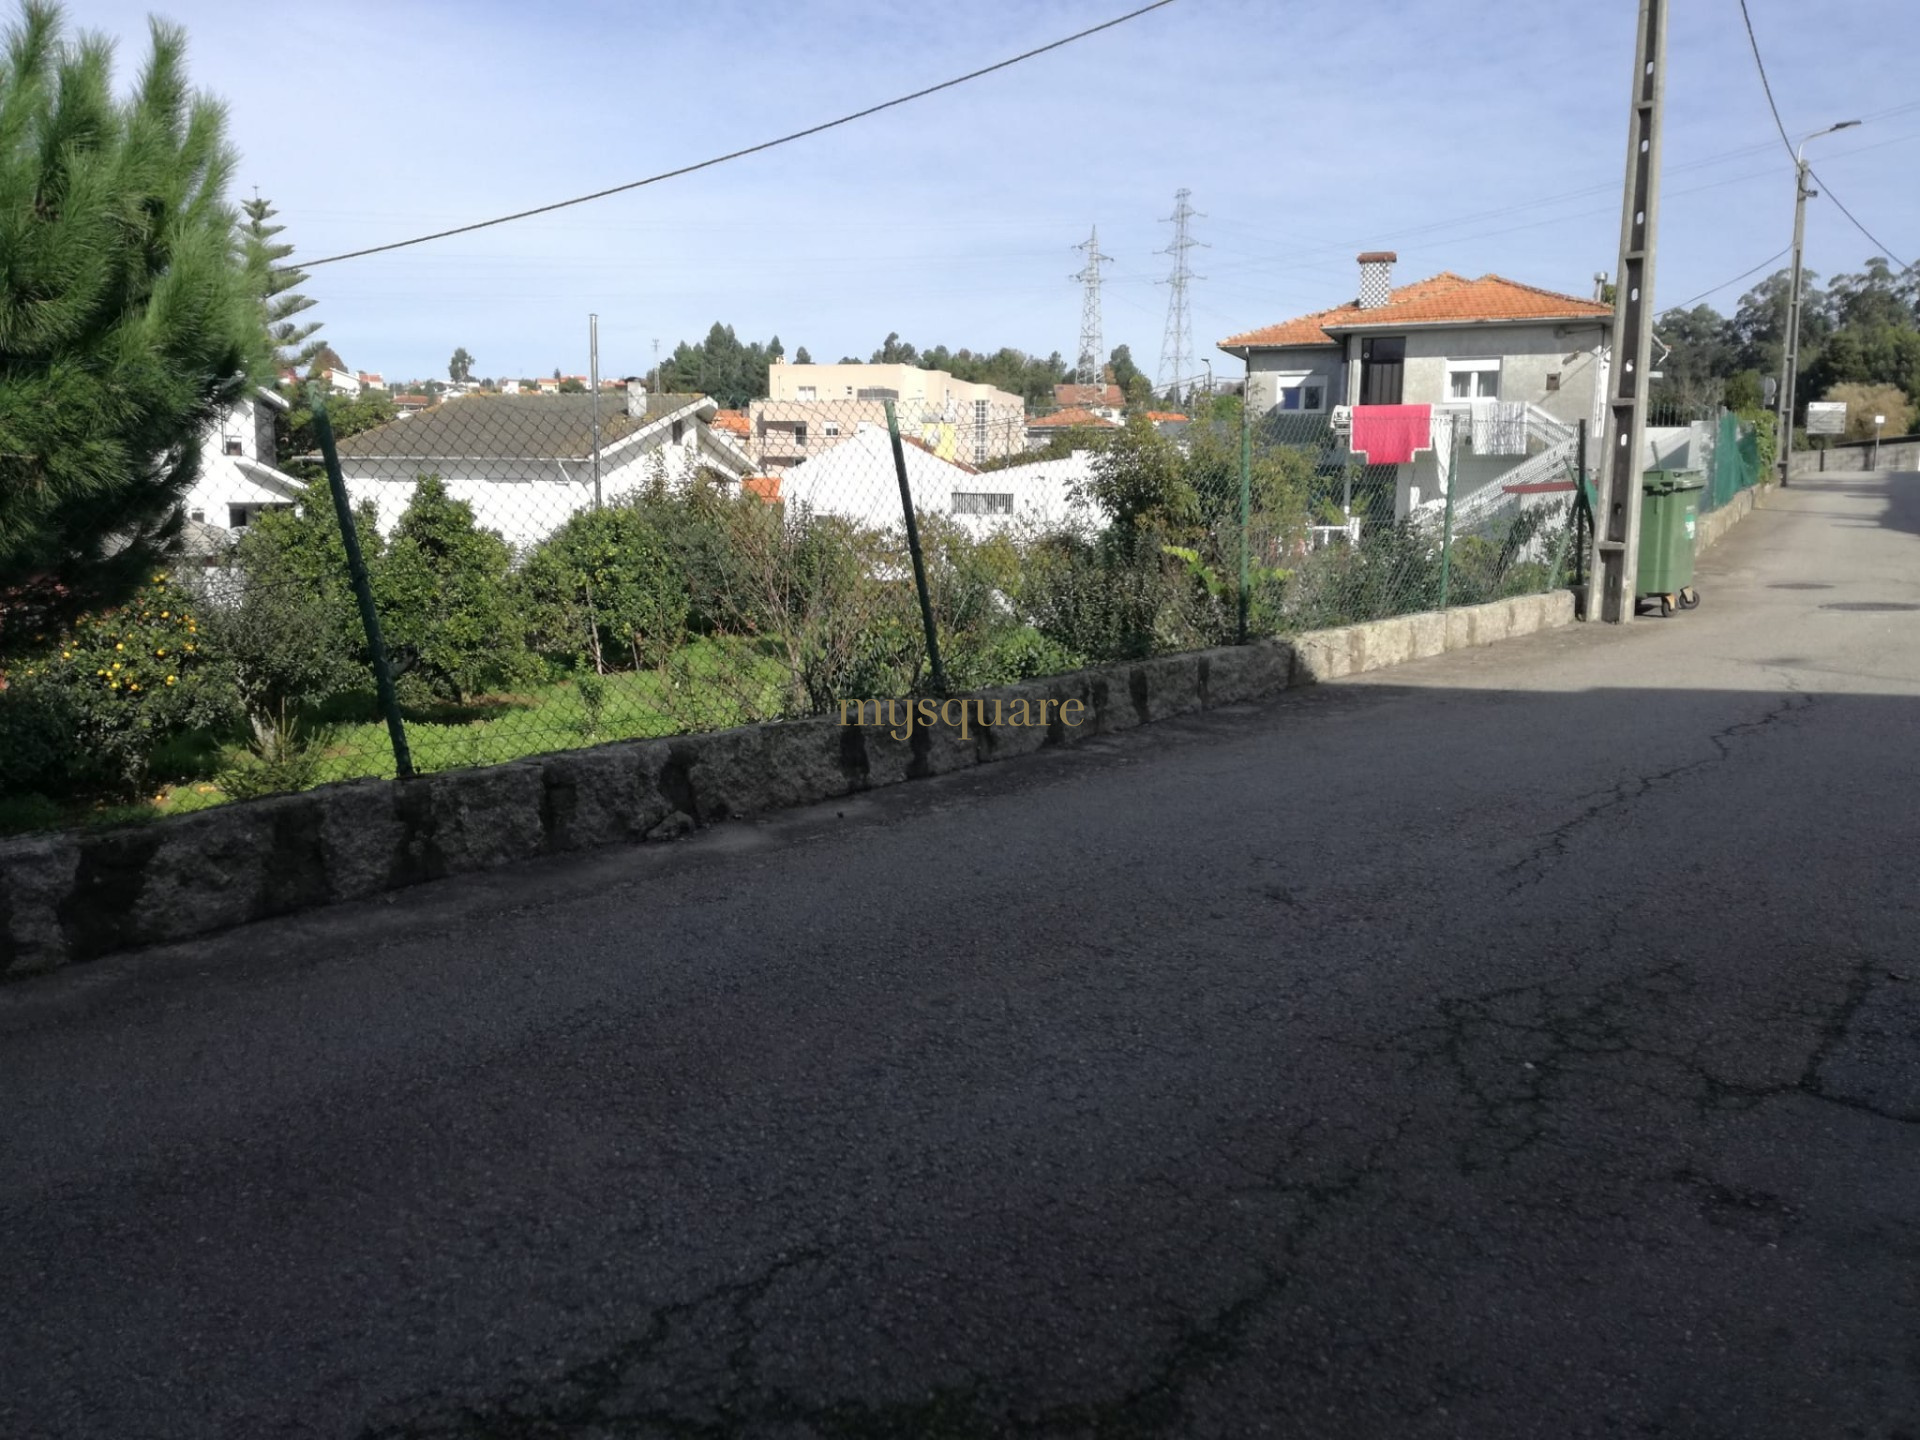 Terreno, possibilidade de construção 2 moradias, Sermonde, Vila Nova de Gaia